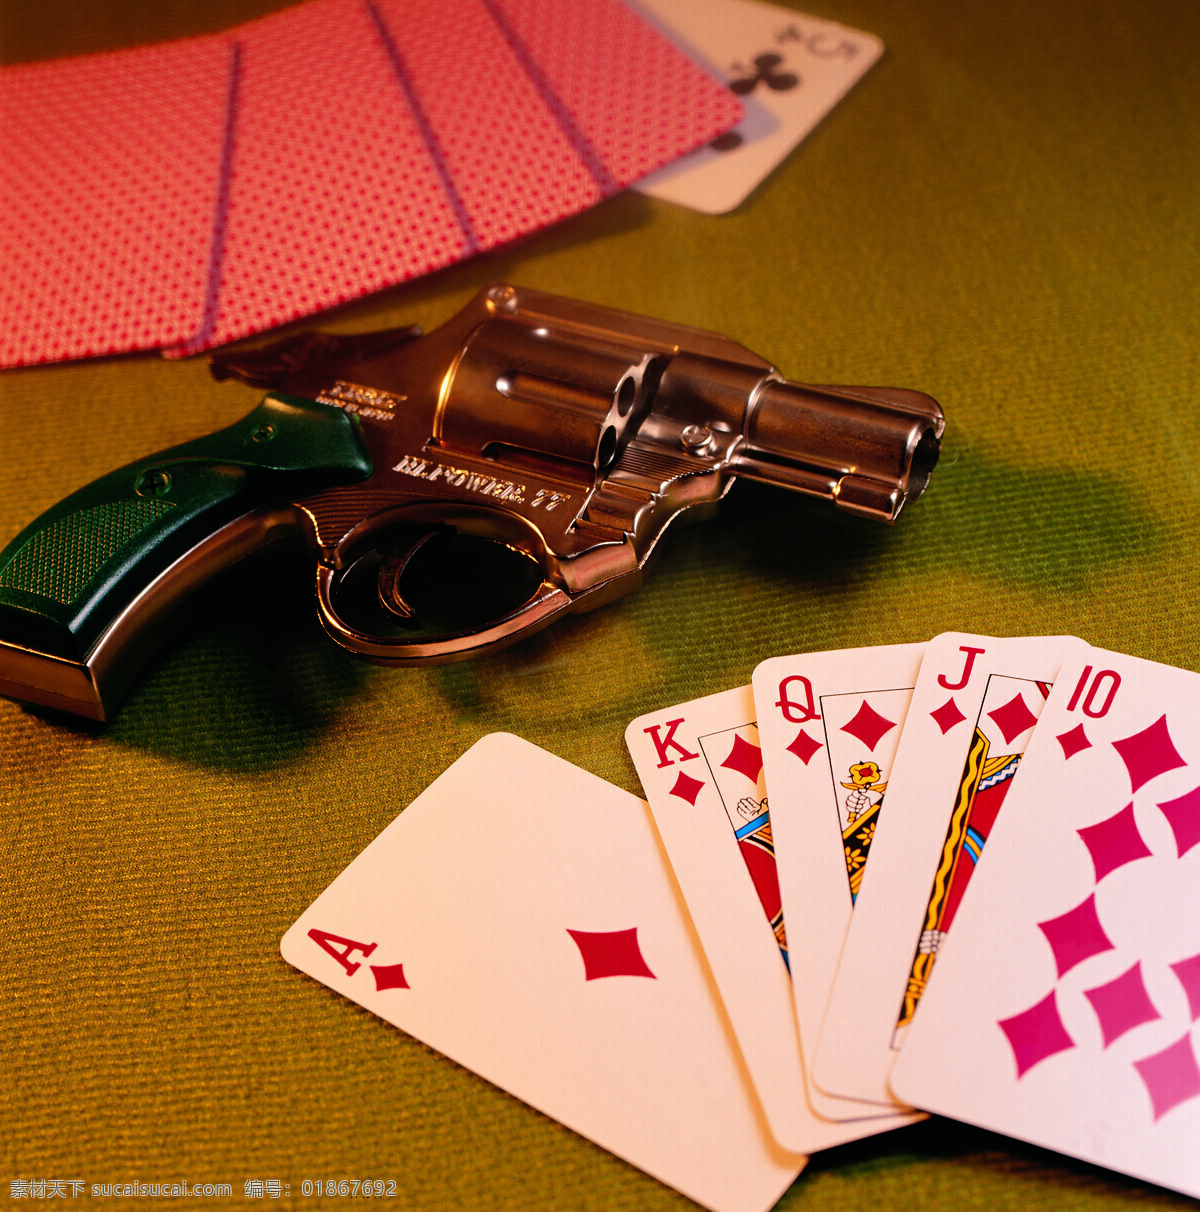 玩扑克 赌场 扑克 手枪 赌桌 拉斯维加斯 娱乐休闲 生活百科